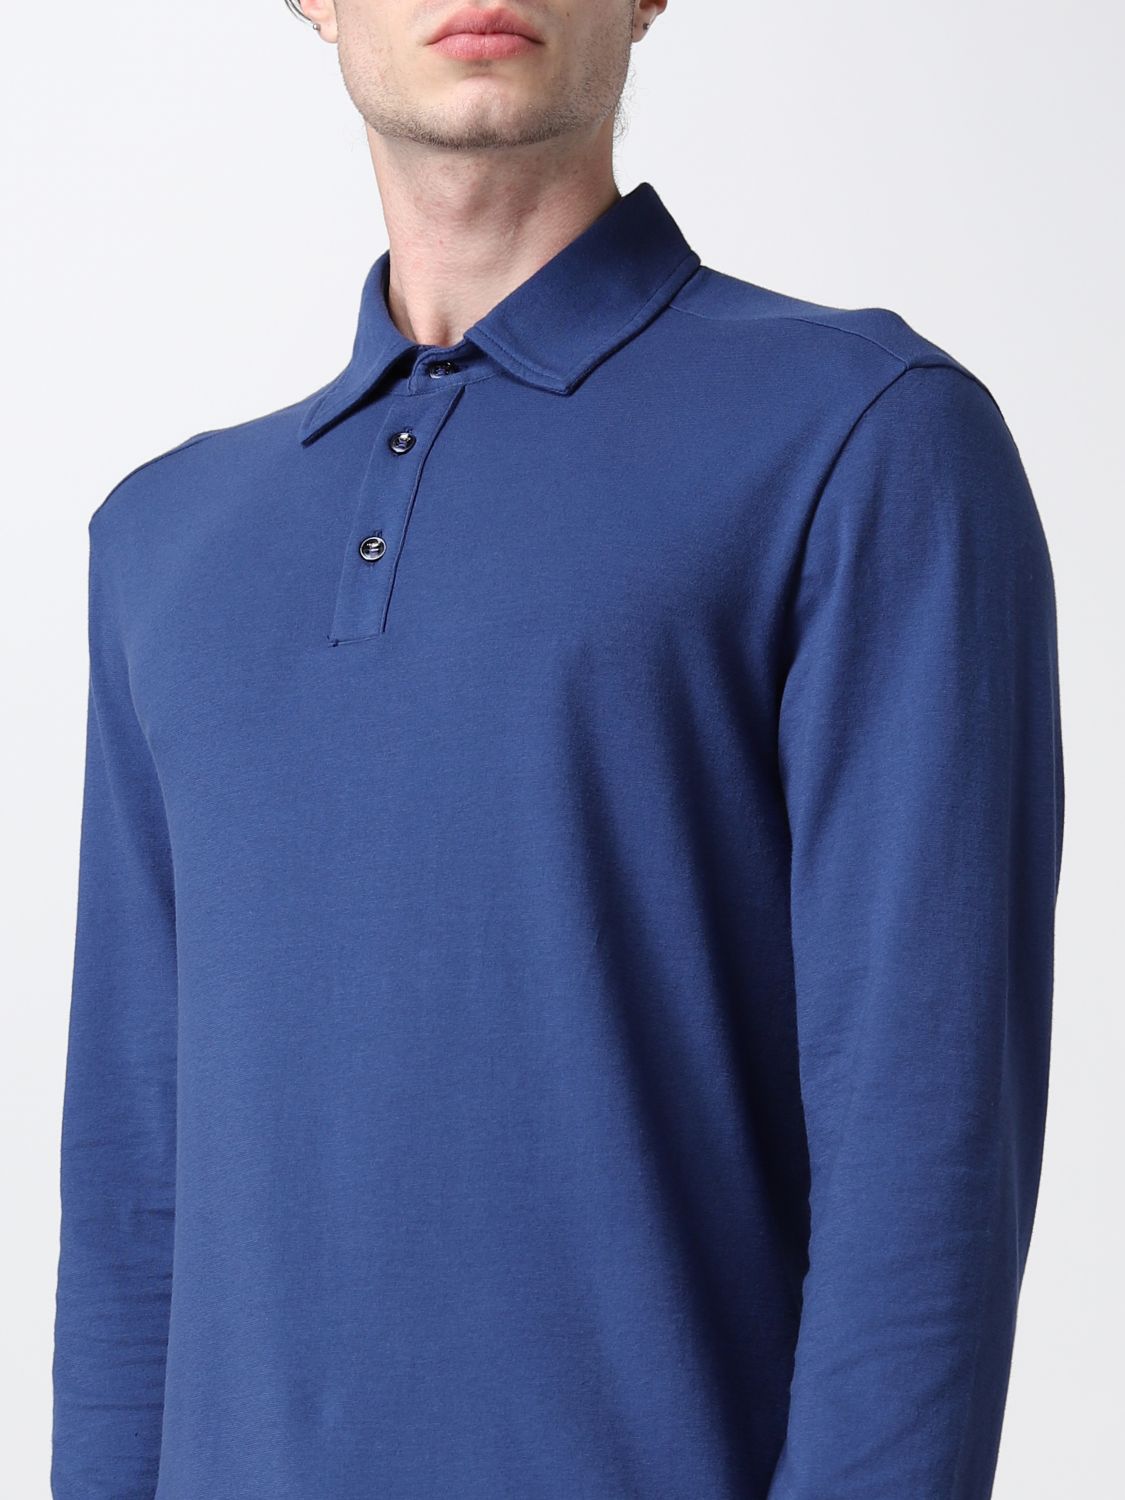 ポロシャツ Malo: ポロシャツ Malo メンズ ブルー 1 3